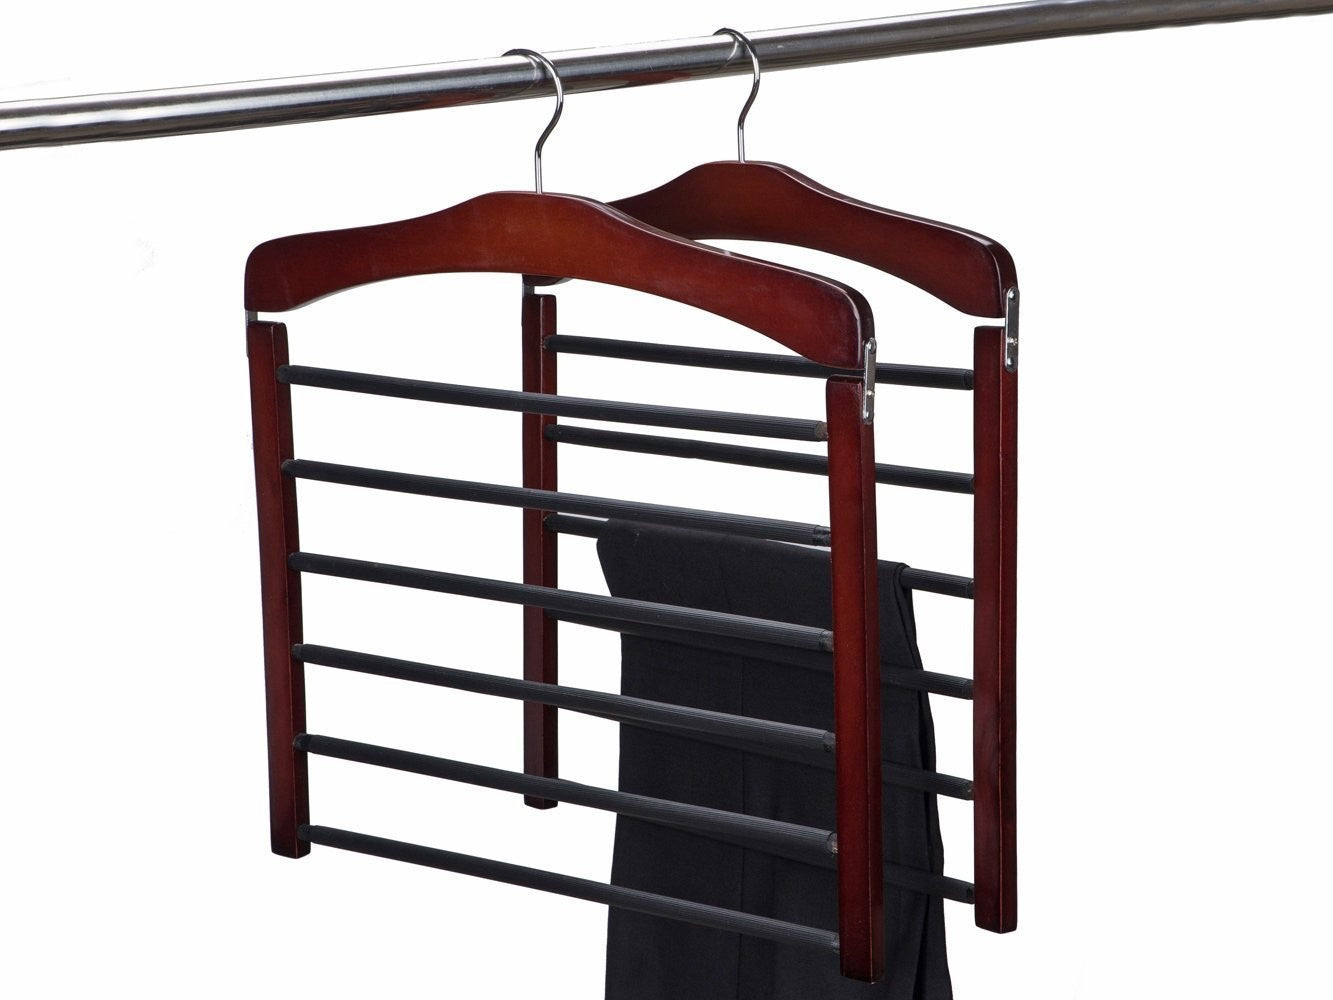 Black Wooden Hangers – Only Hangers Inc.